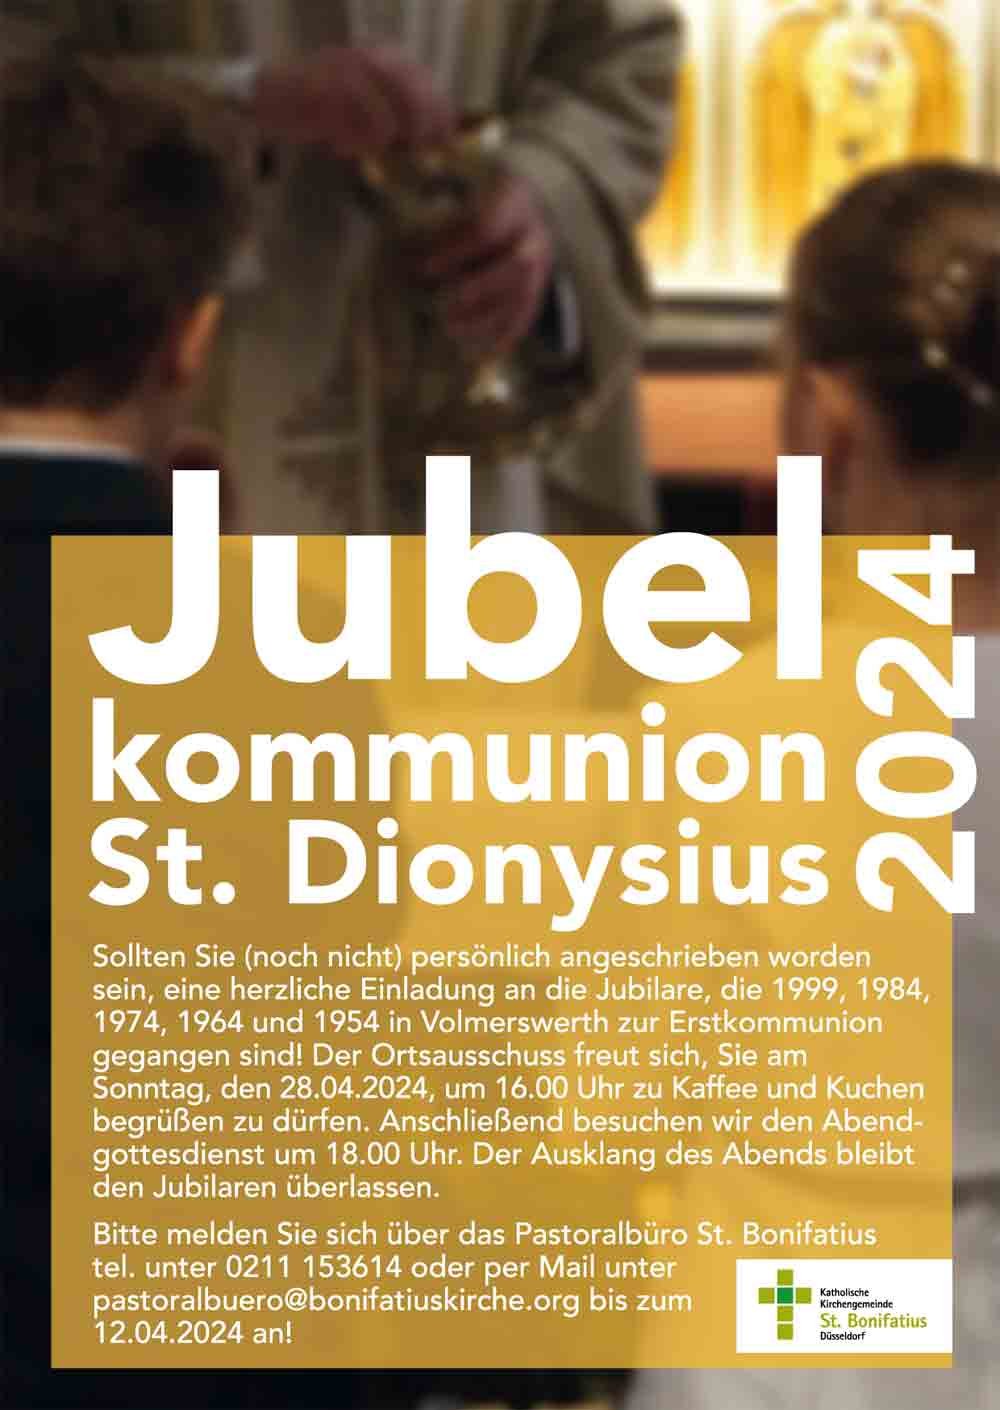 JubelkommunionSt. Dionysius (c) OA Volmerswerth der kath. Kirchengemeinde St. Bonifatius Düsseldorf